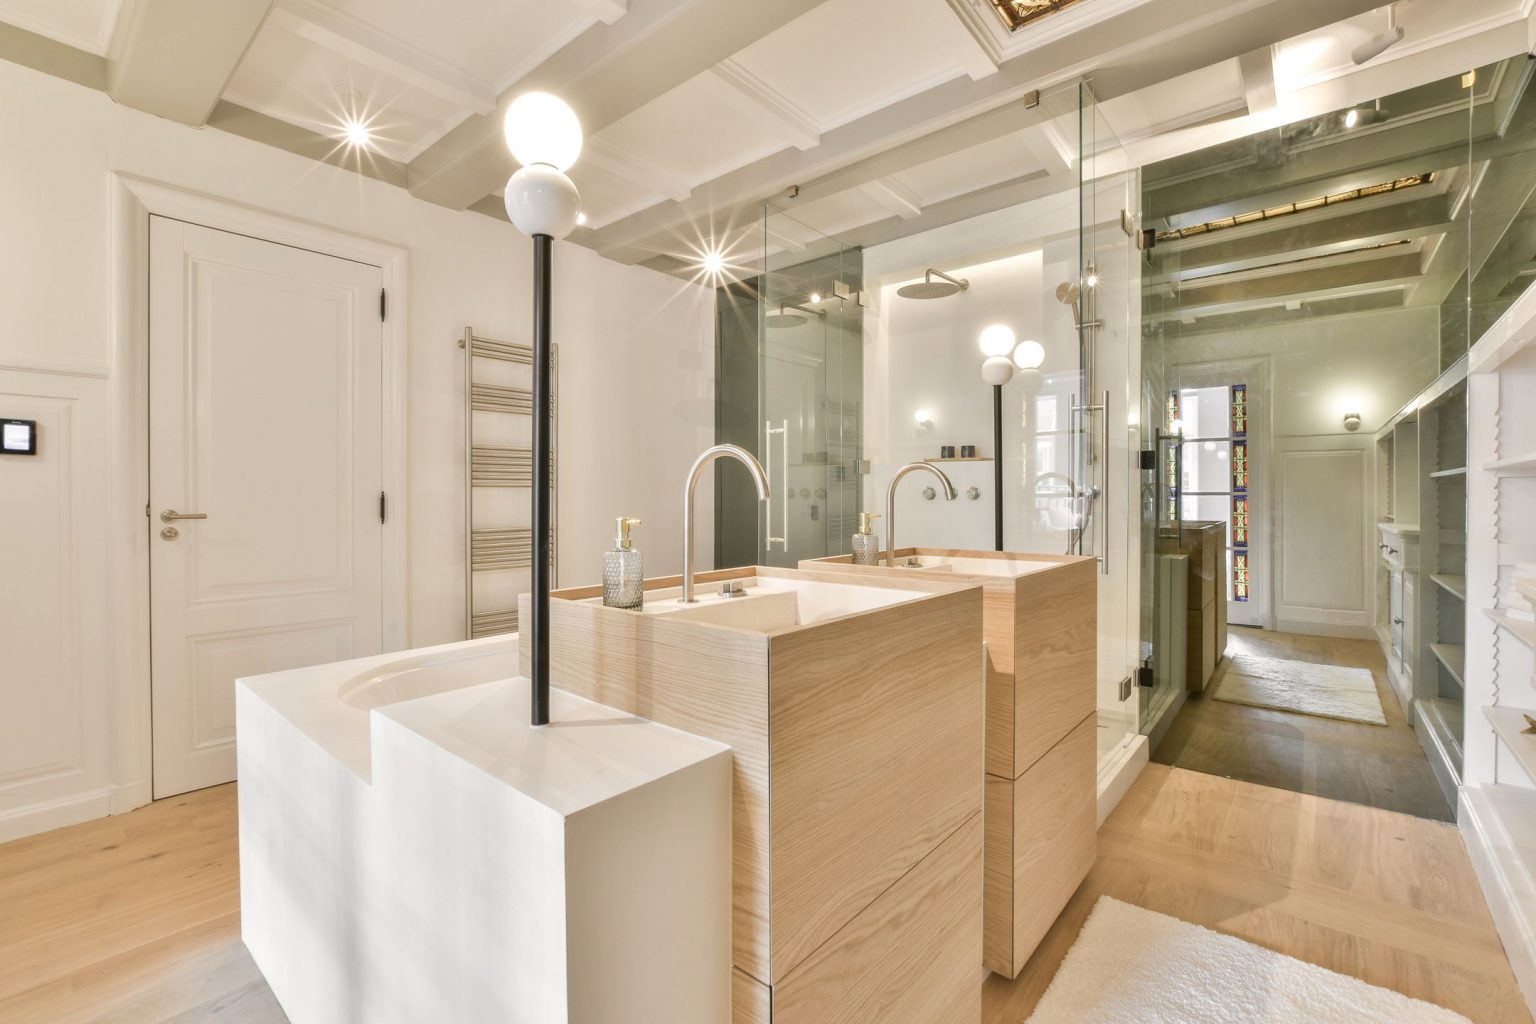 salle de bain décoration design beige et bois